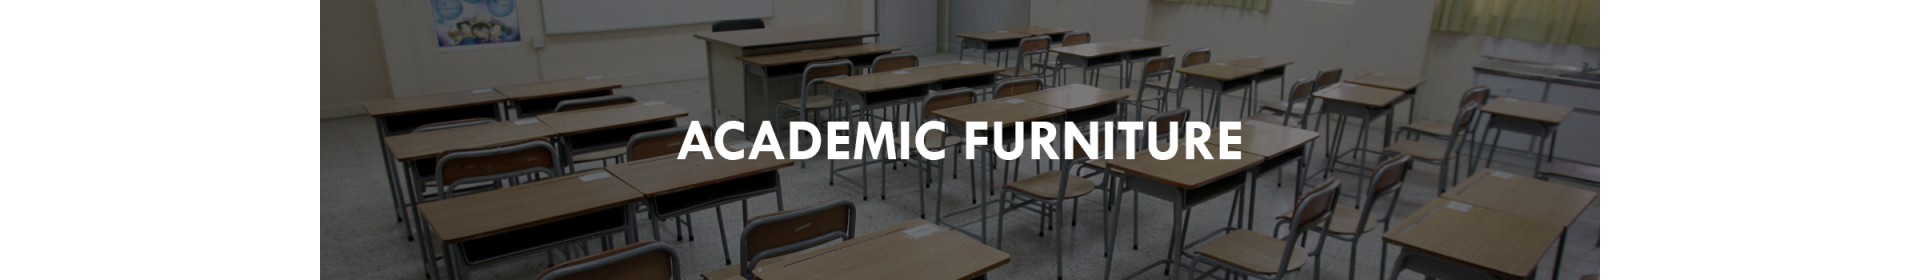 Academic Furniture